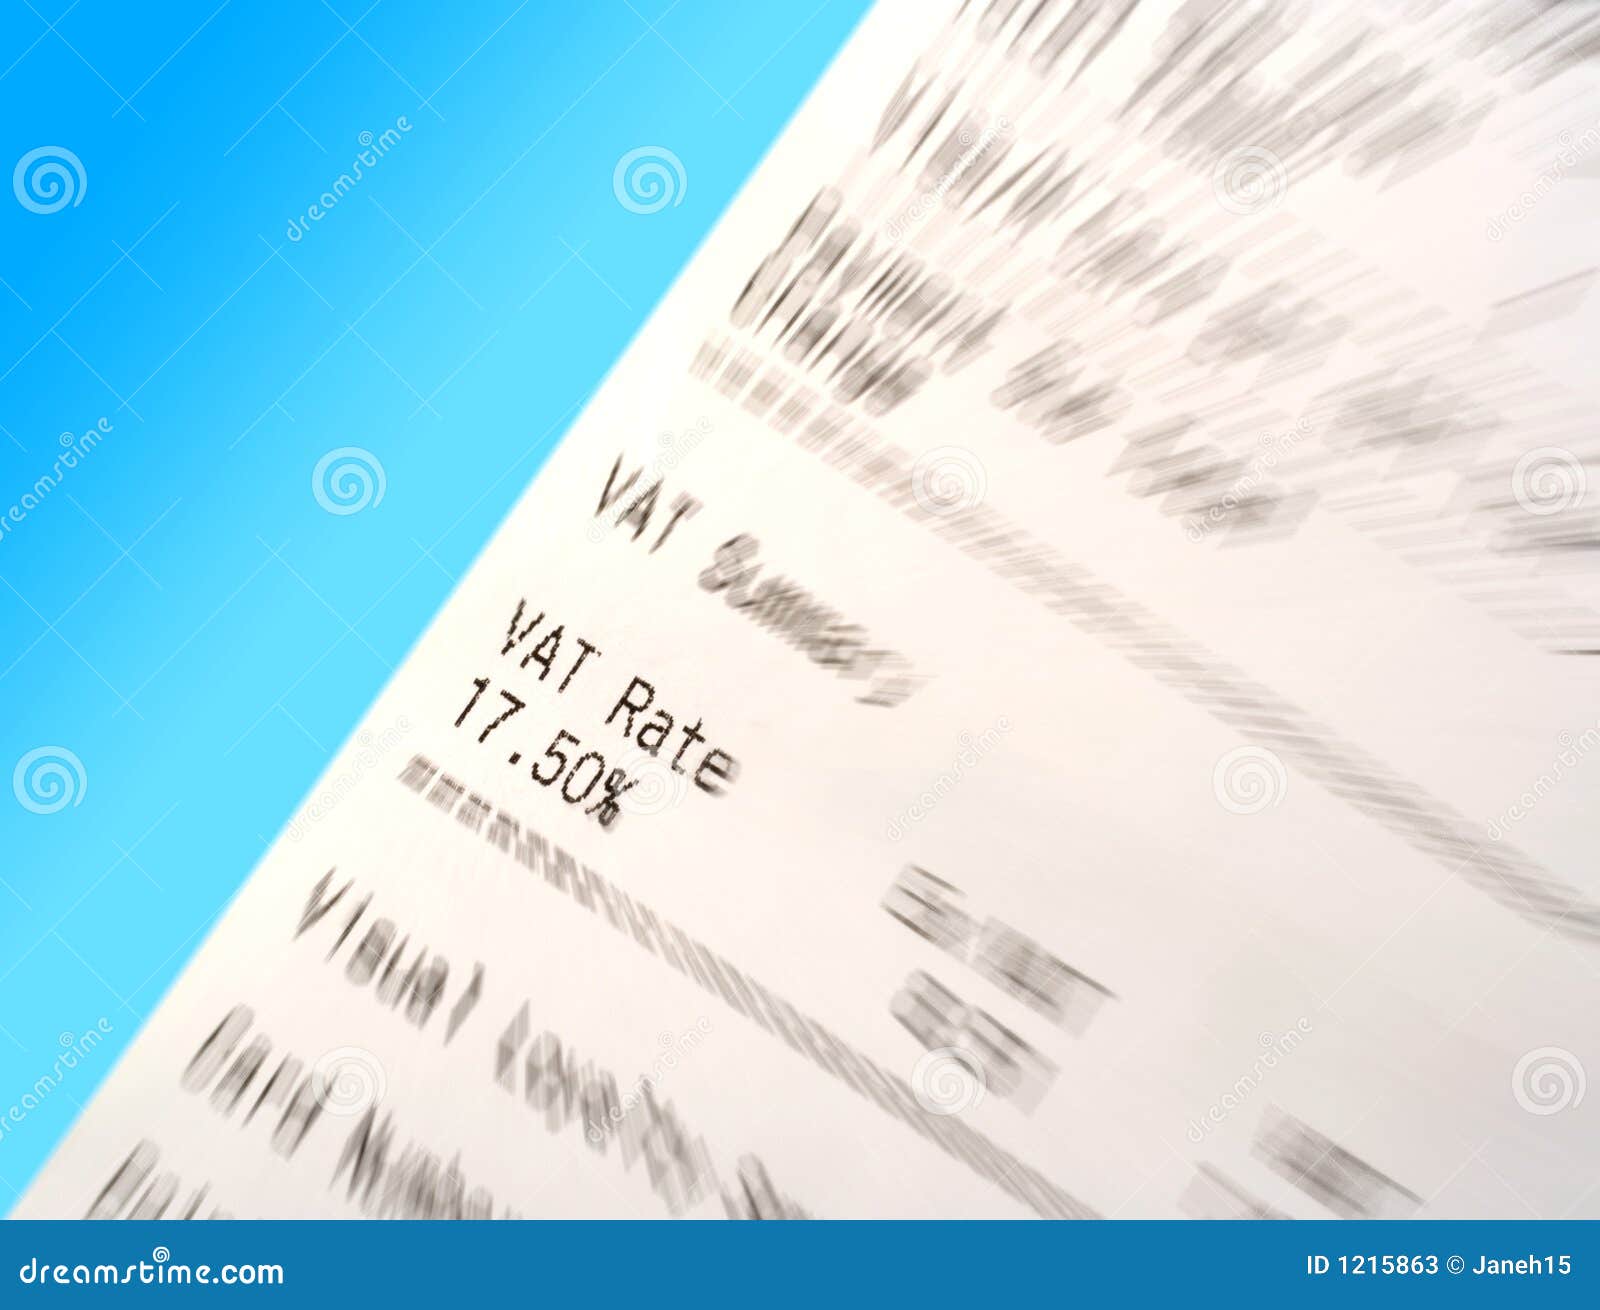 vat receipt with blur